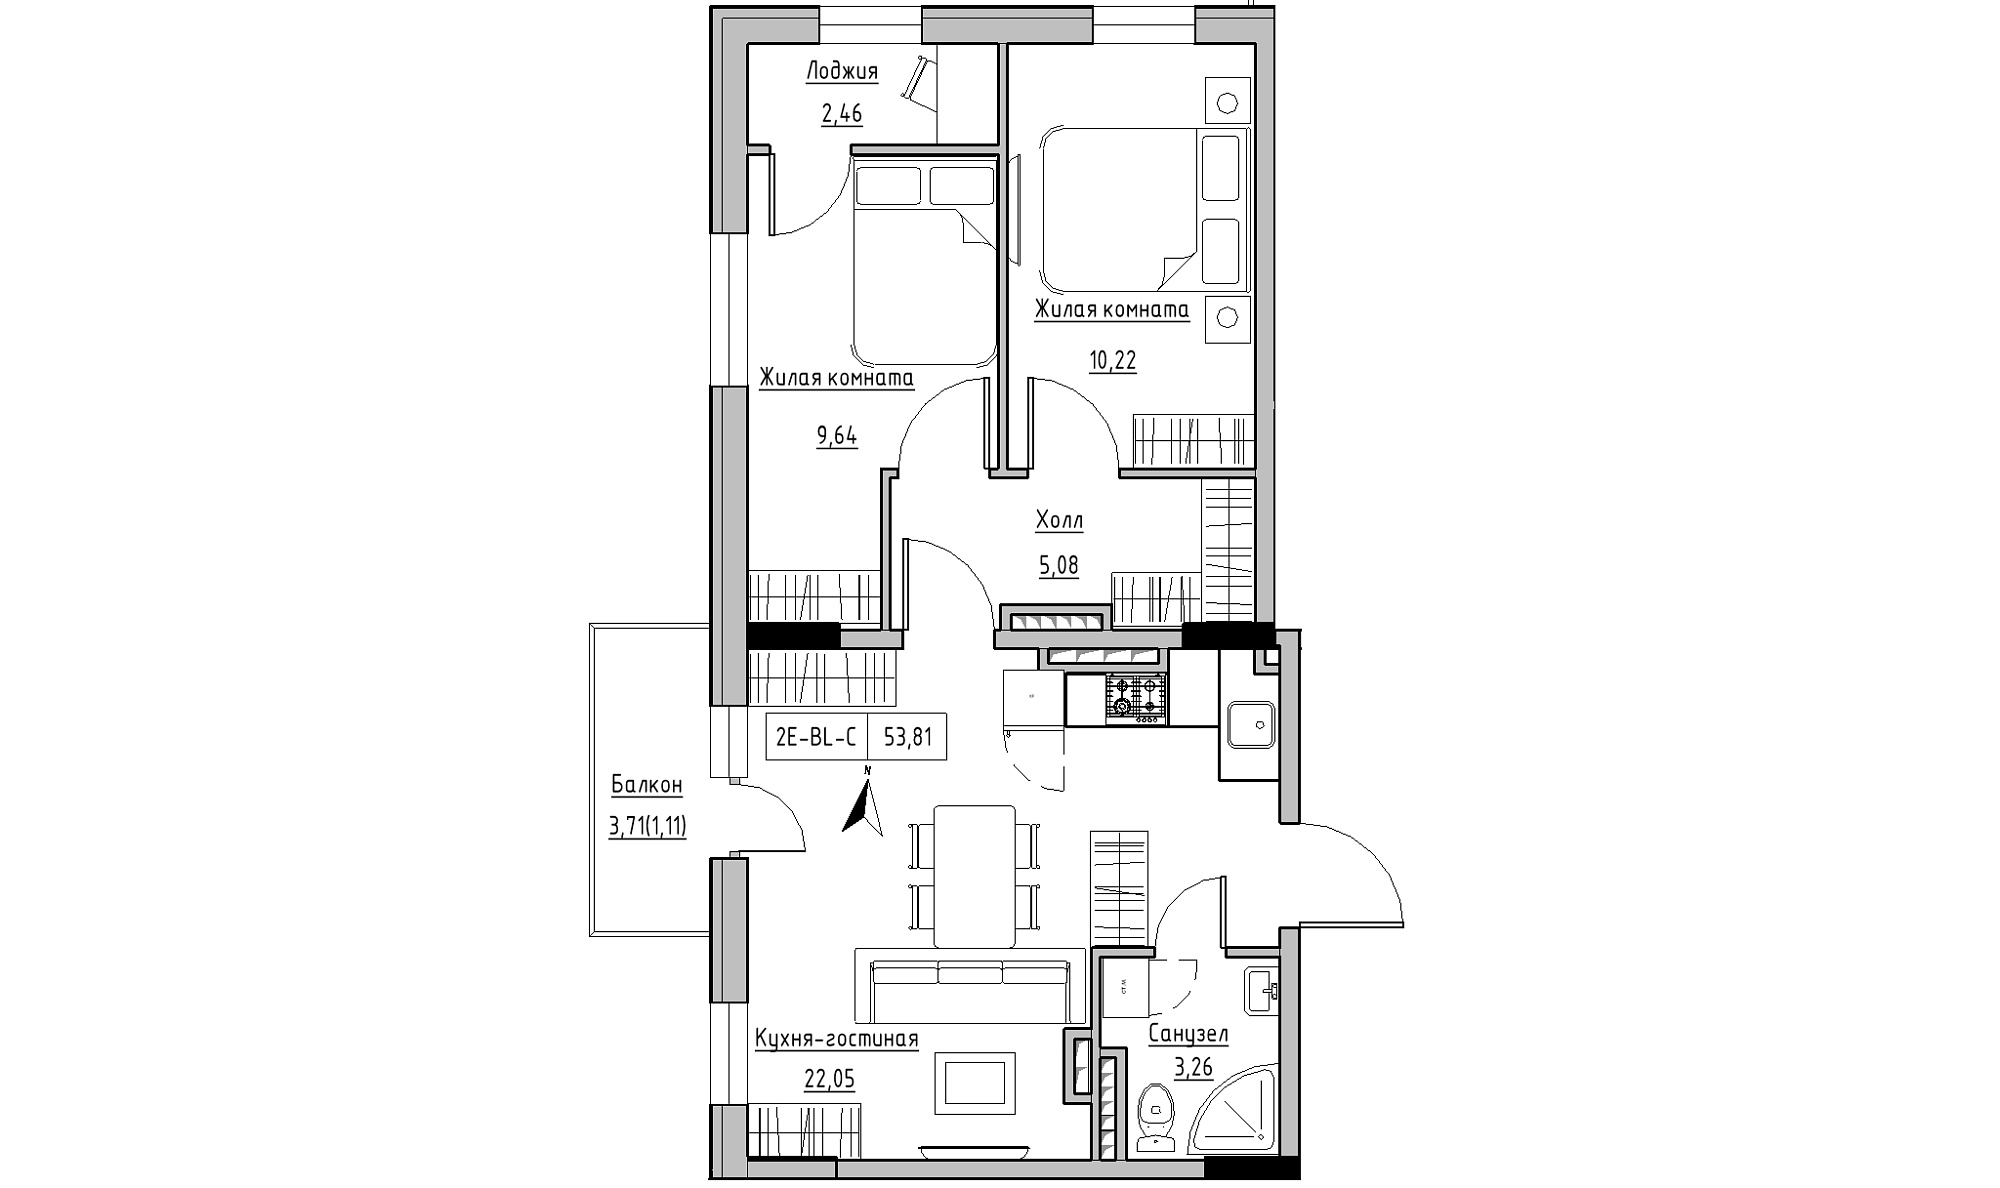 Планування 2-к квартира площею 53.81м2, KS-025-06/0005.